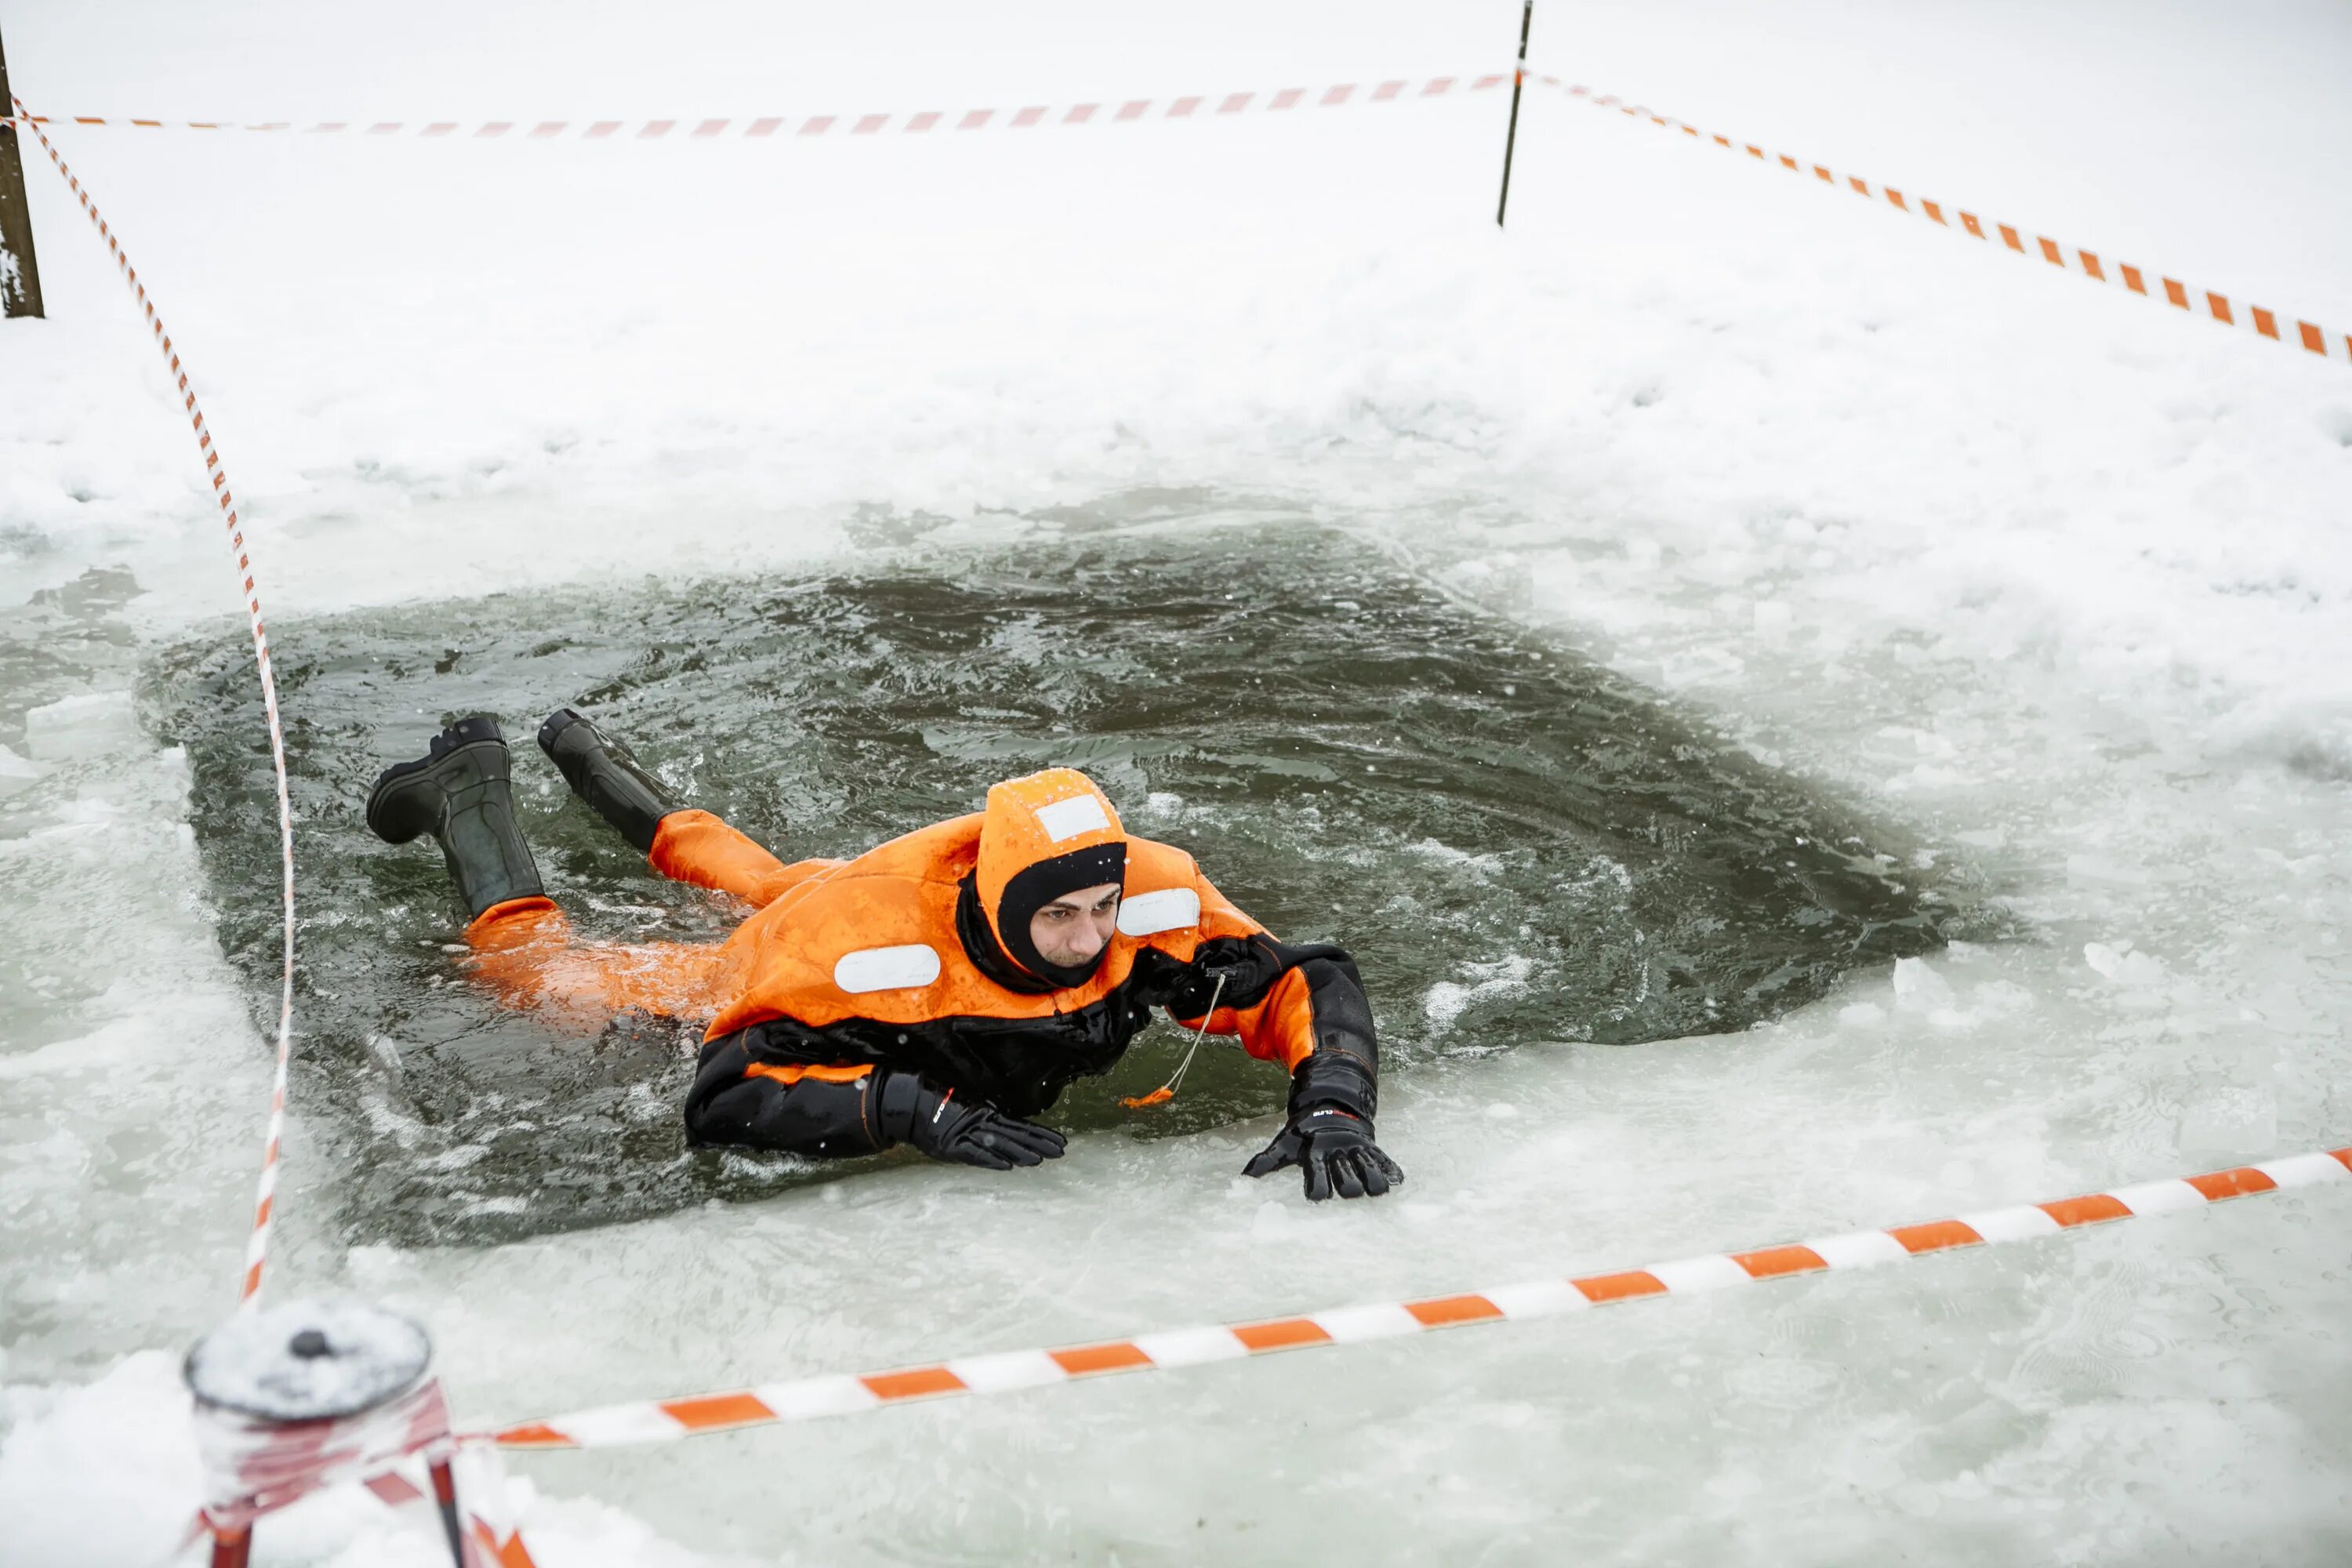 Спасение человека провалившегося под лед. Человек провалился под лед. МЧС России спасает человека на льду. Оказание помощи провалившемуся под лед. Утонувшие зимой